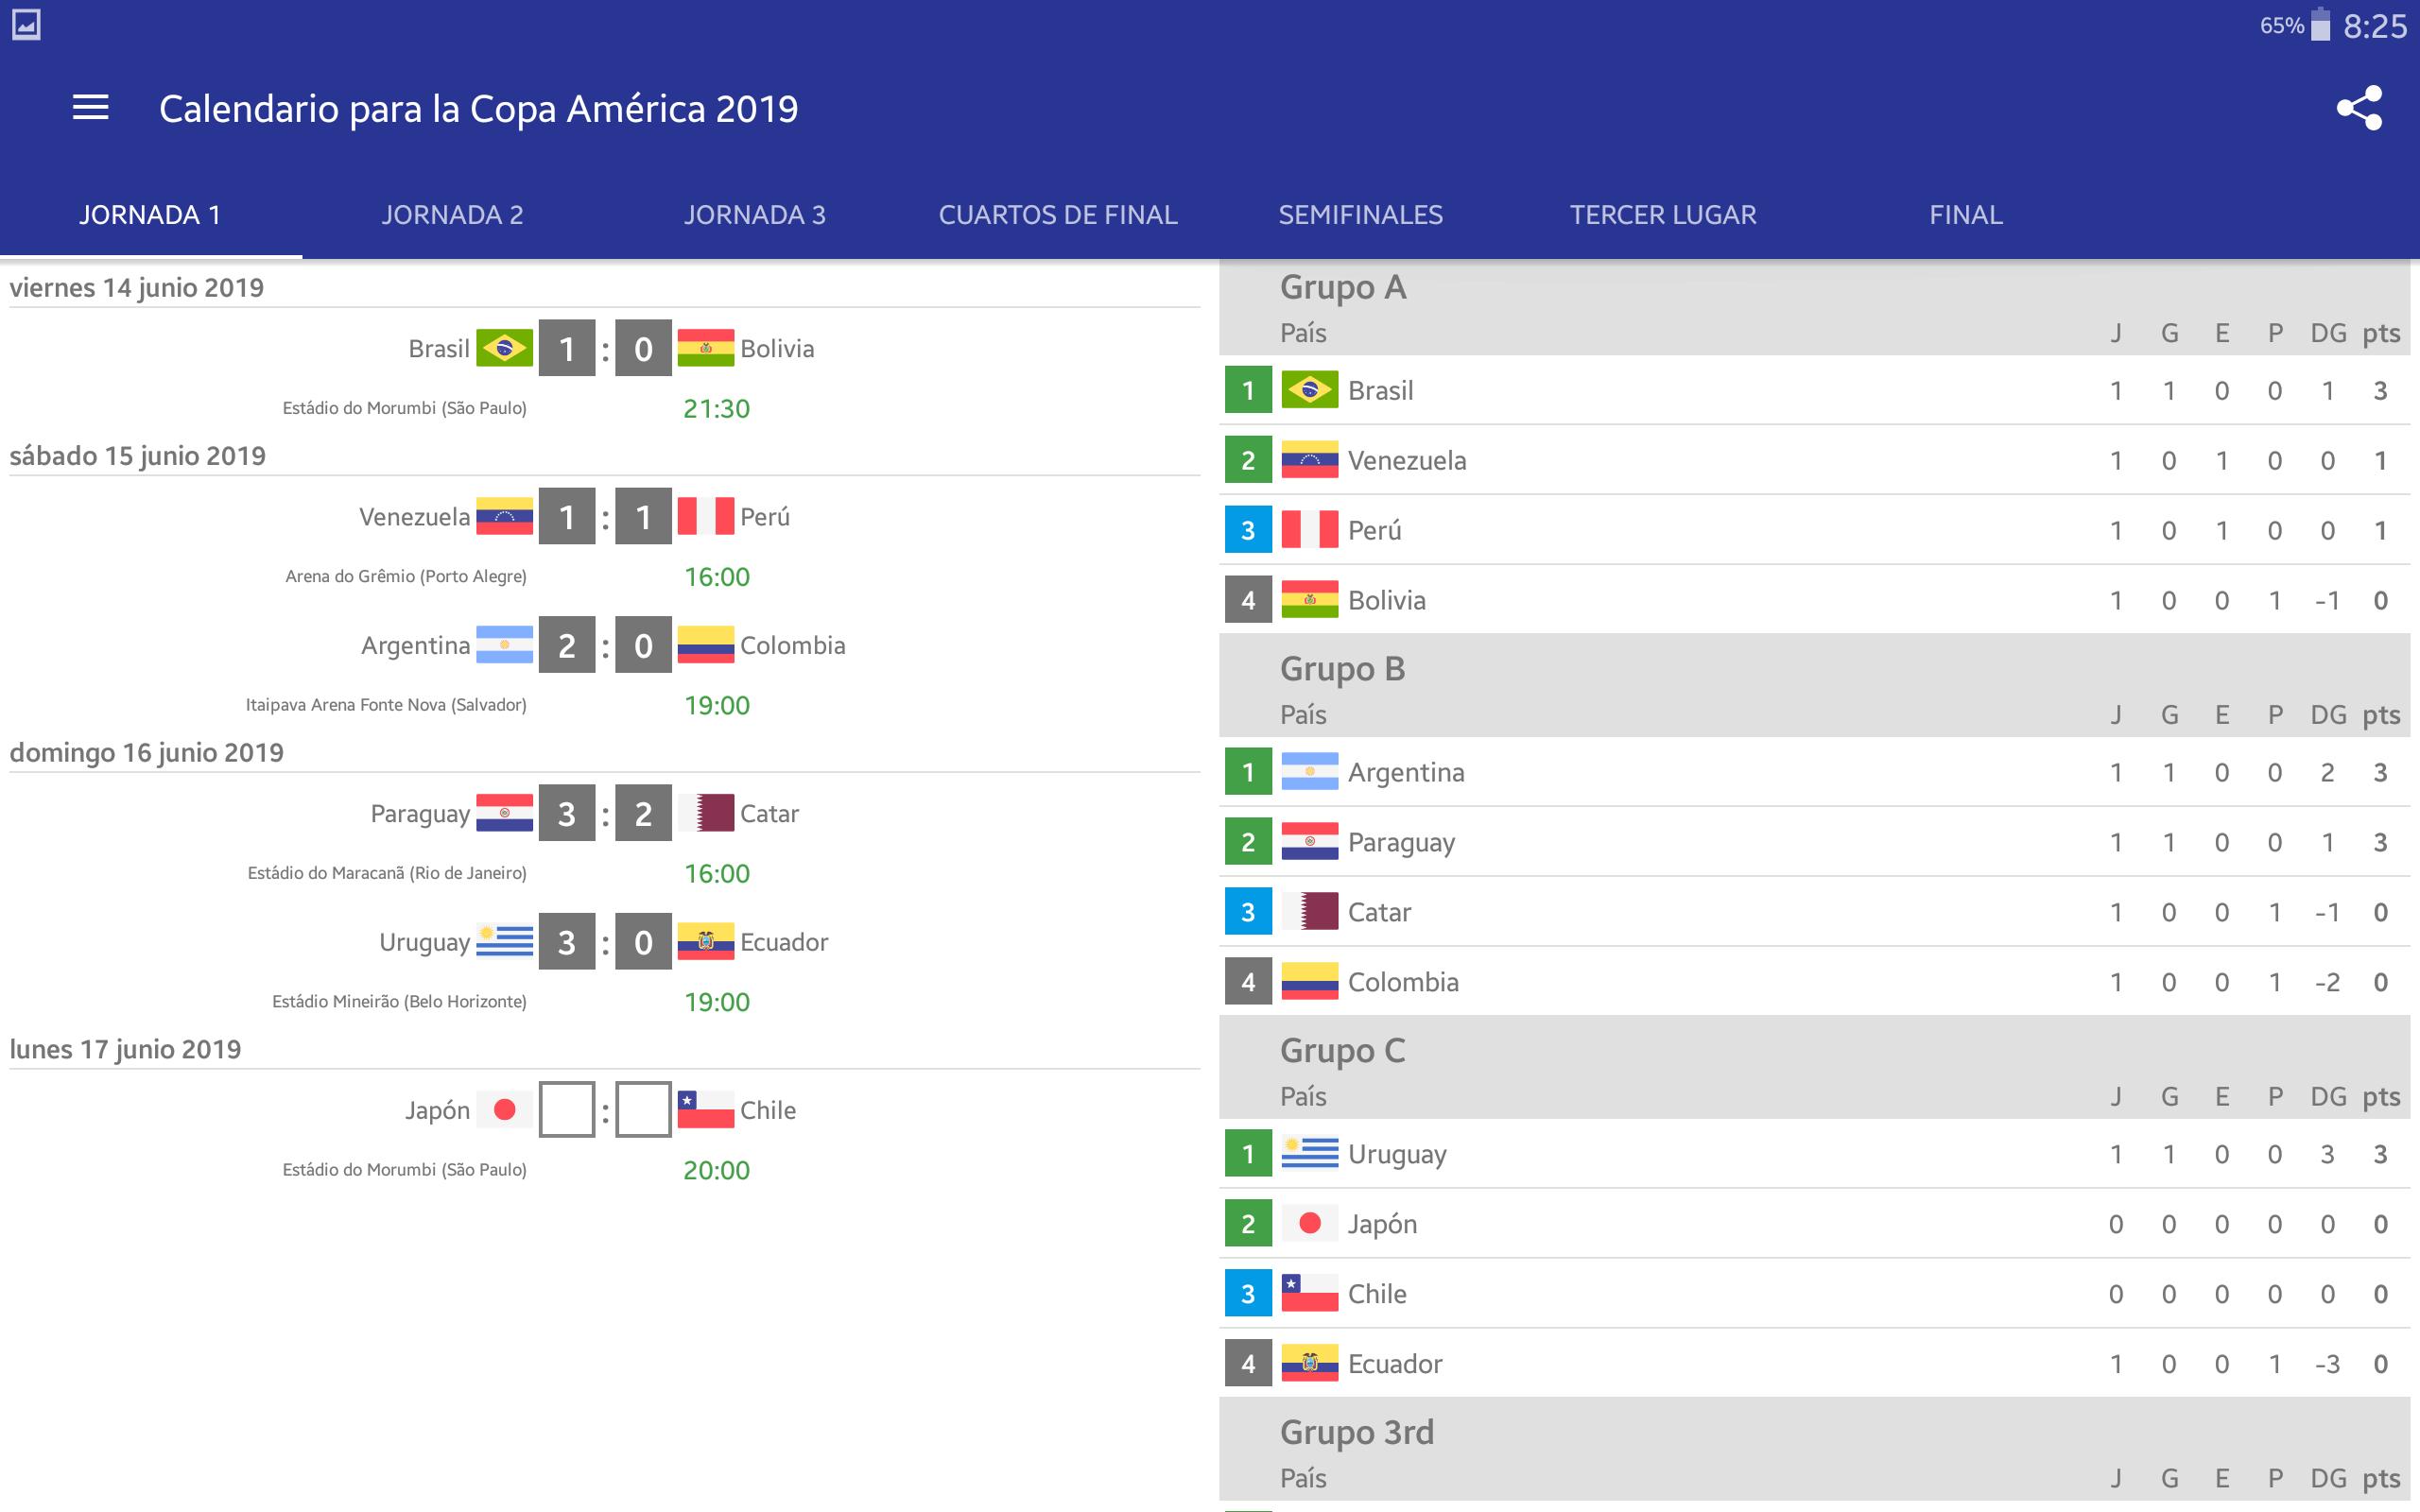 Calendario para la Copa América 2019 for Android - APK Download